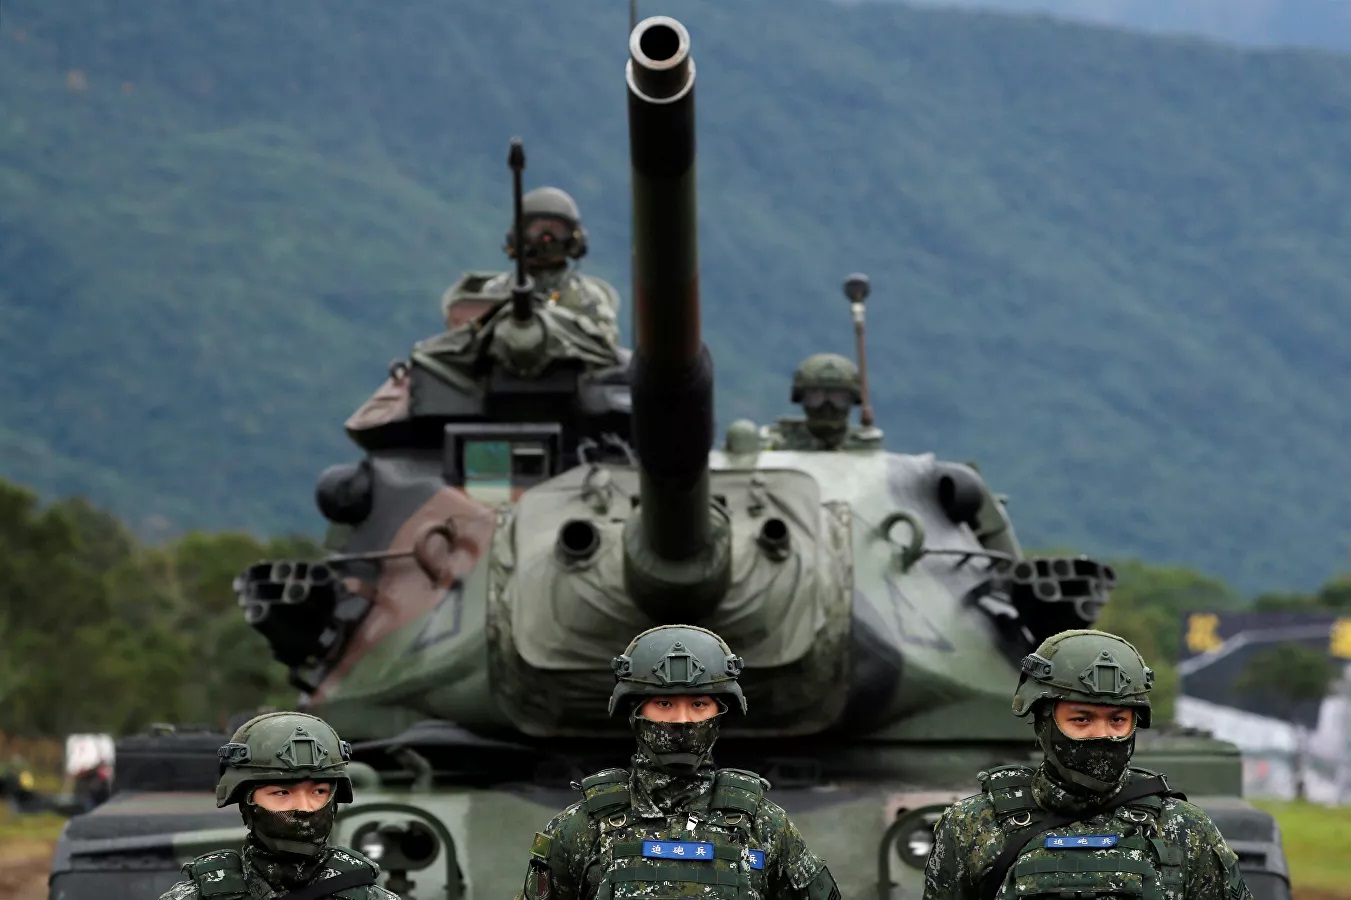 Đài Loan hiện là “điểm nóng” nhất toàn cầu, tiềm ẩn nguy cơ gây ra xung đột quân sự Mỹ - Trung. Ảnh: Reuters